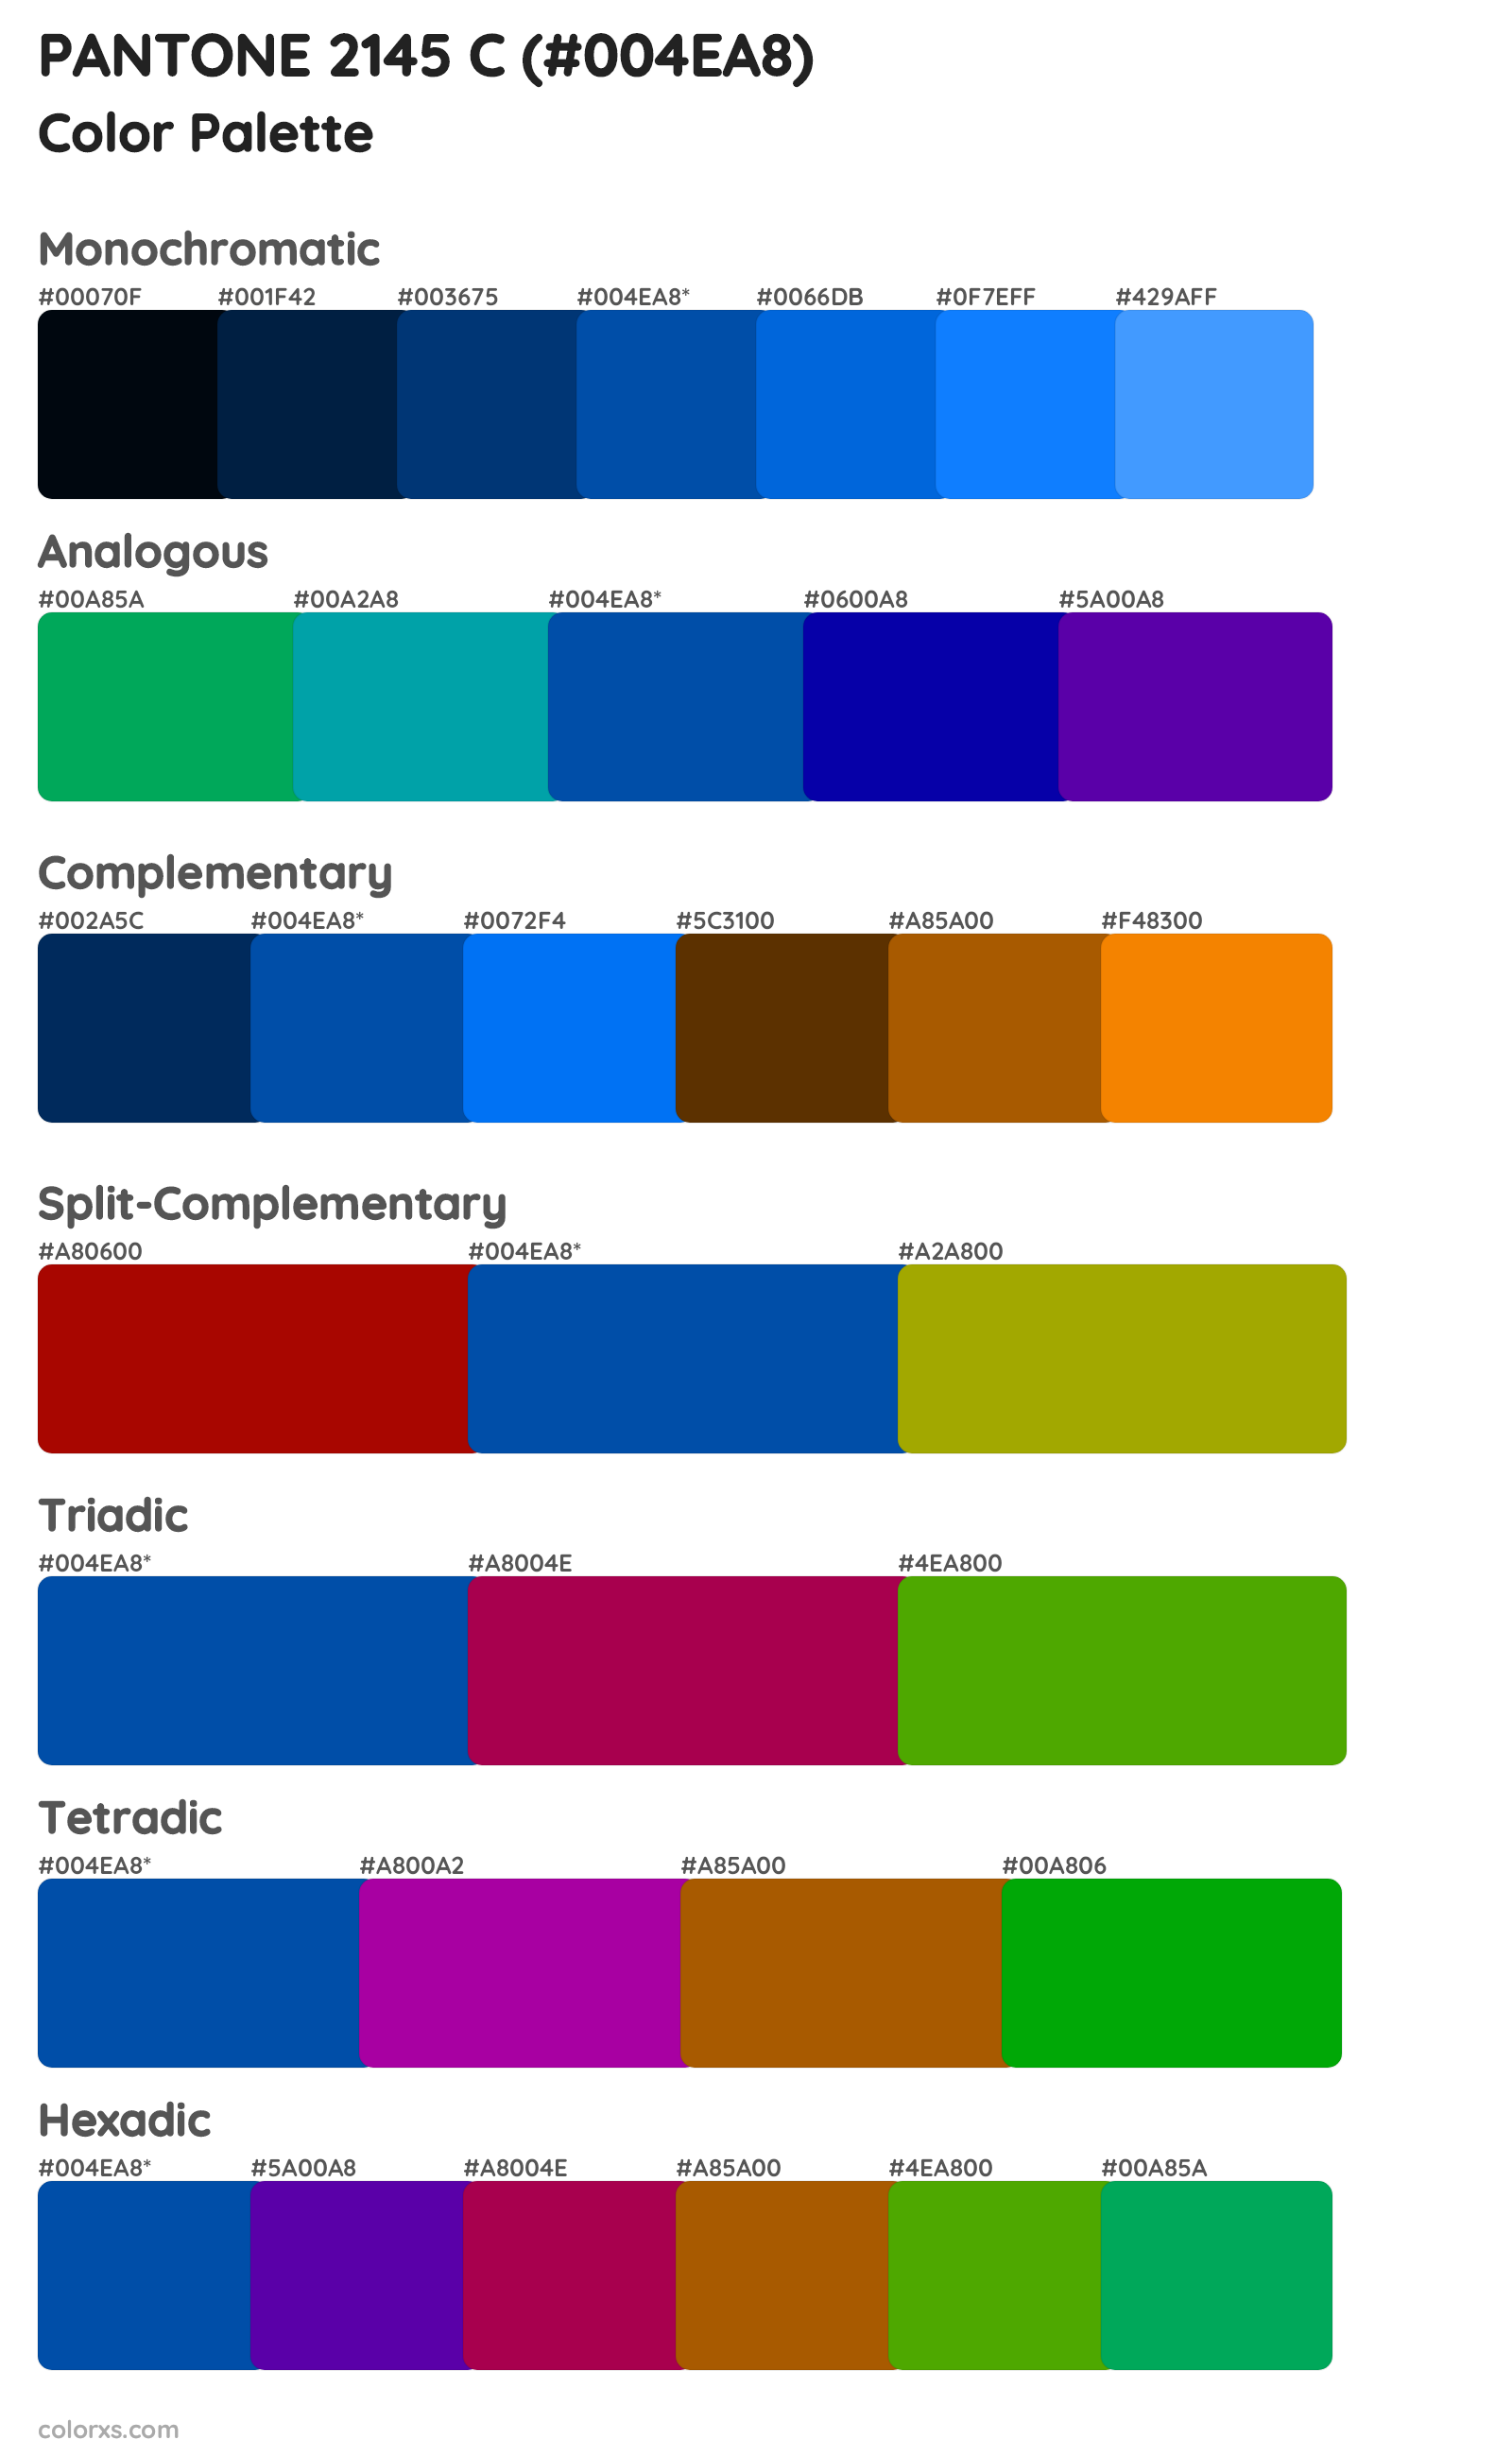 PANTONE 2145 C Color Scheme Palettes